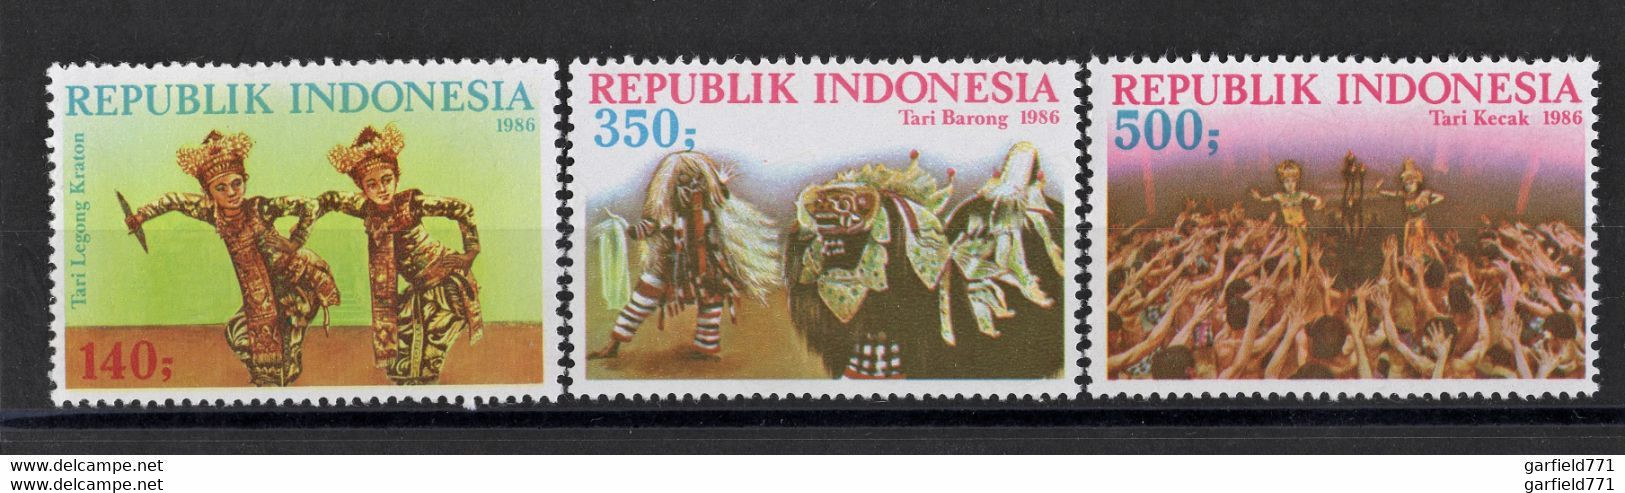 INDONESIE 1986 - Tari Lekong Kraton Tari Barong Tari Kecak LOT N°1267 1268 1269 NEUF** MNH ! - Indonesien